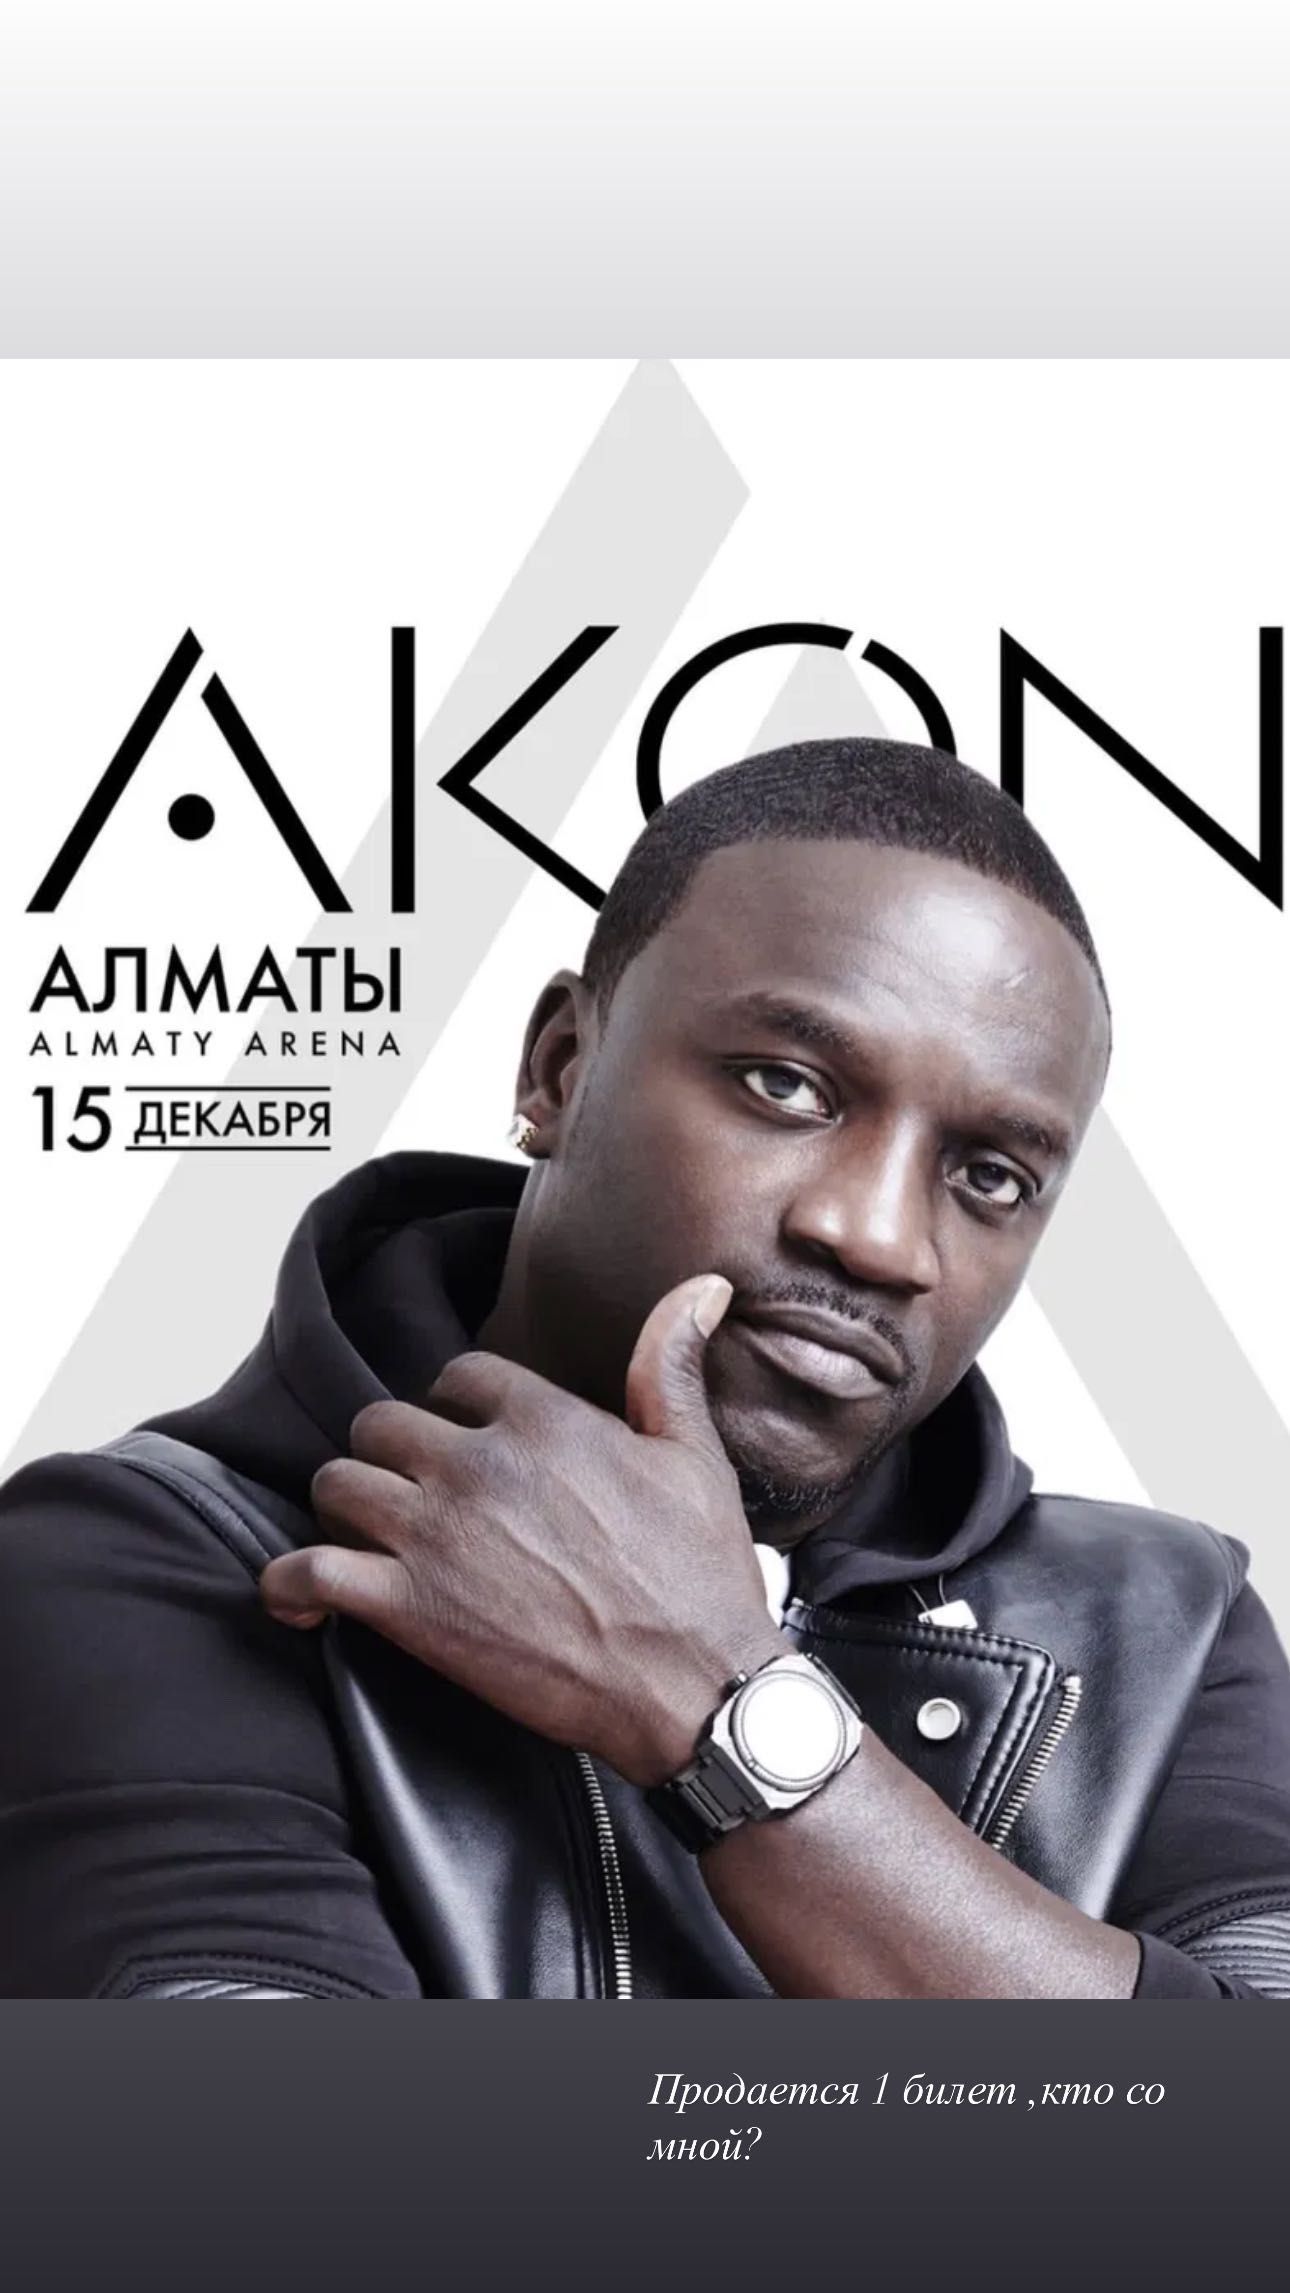 Билет на концерт Akon зона танцпол